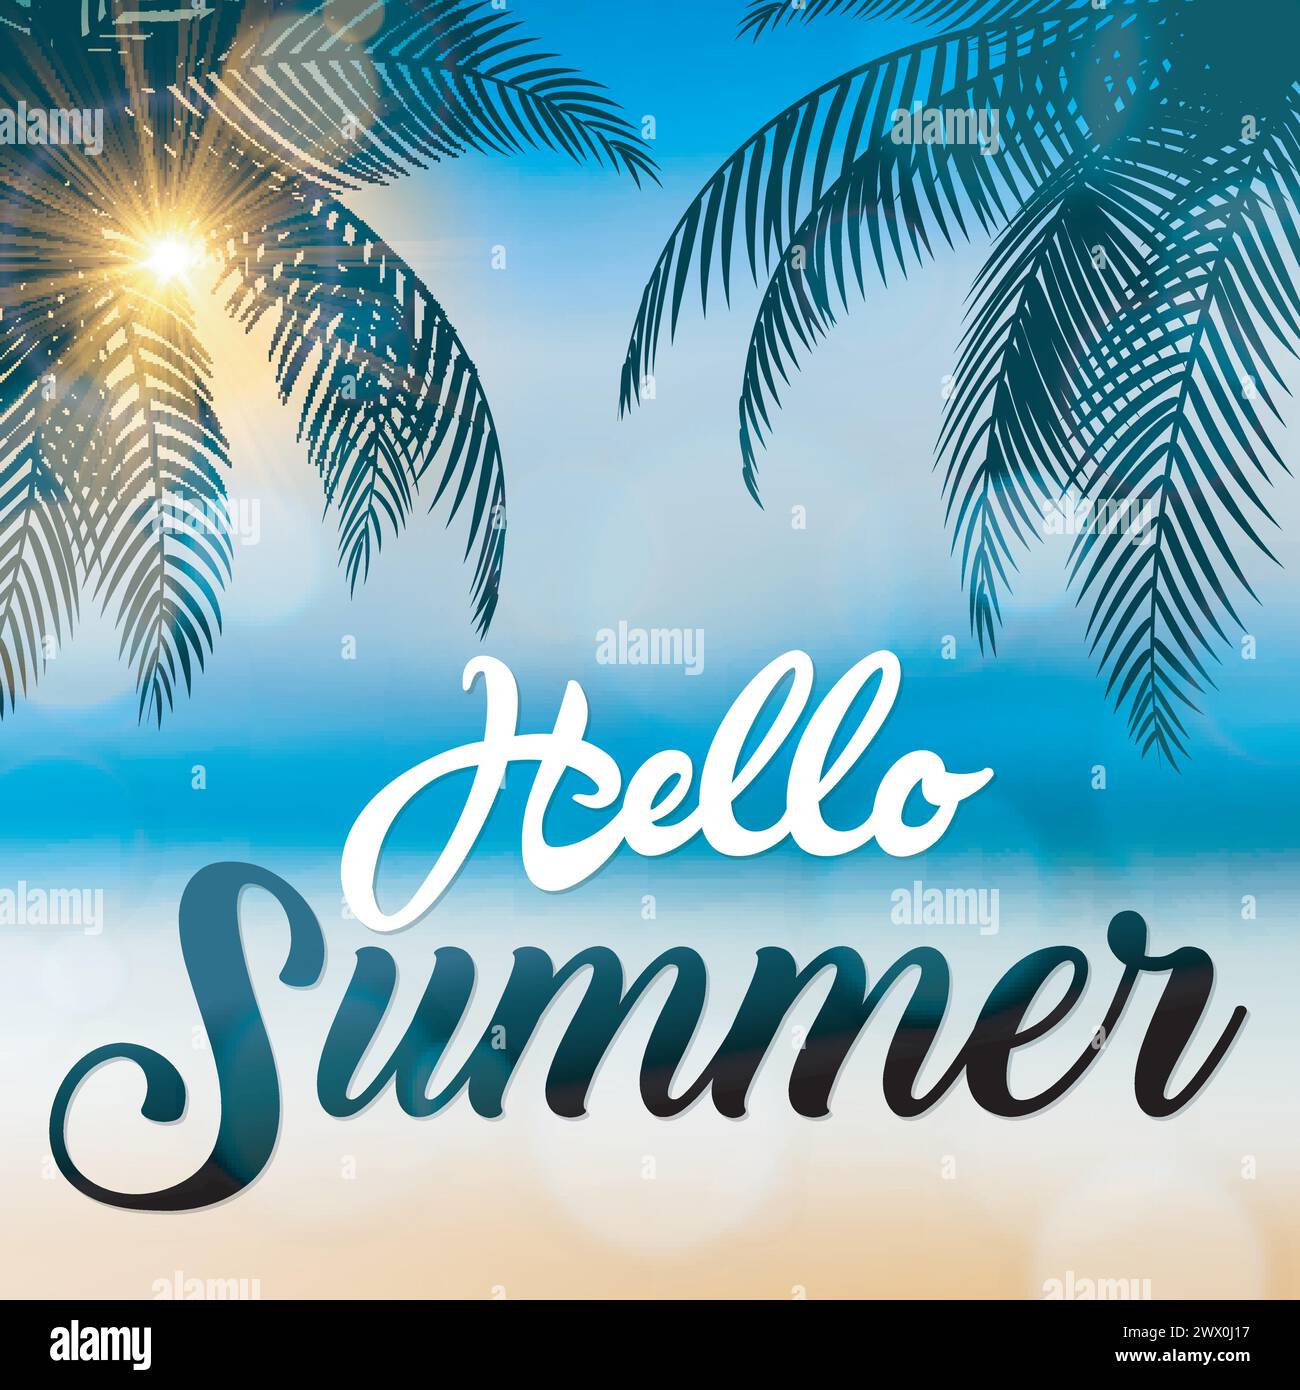 Cartello "Hello Summer", con palme da cocco al mare, adatto per vacanze estive e feste in spiaggia, illustrazione vettoriale Illustrazione Vettoriale